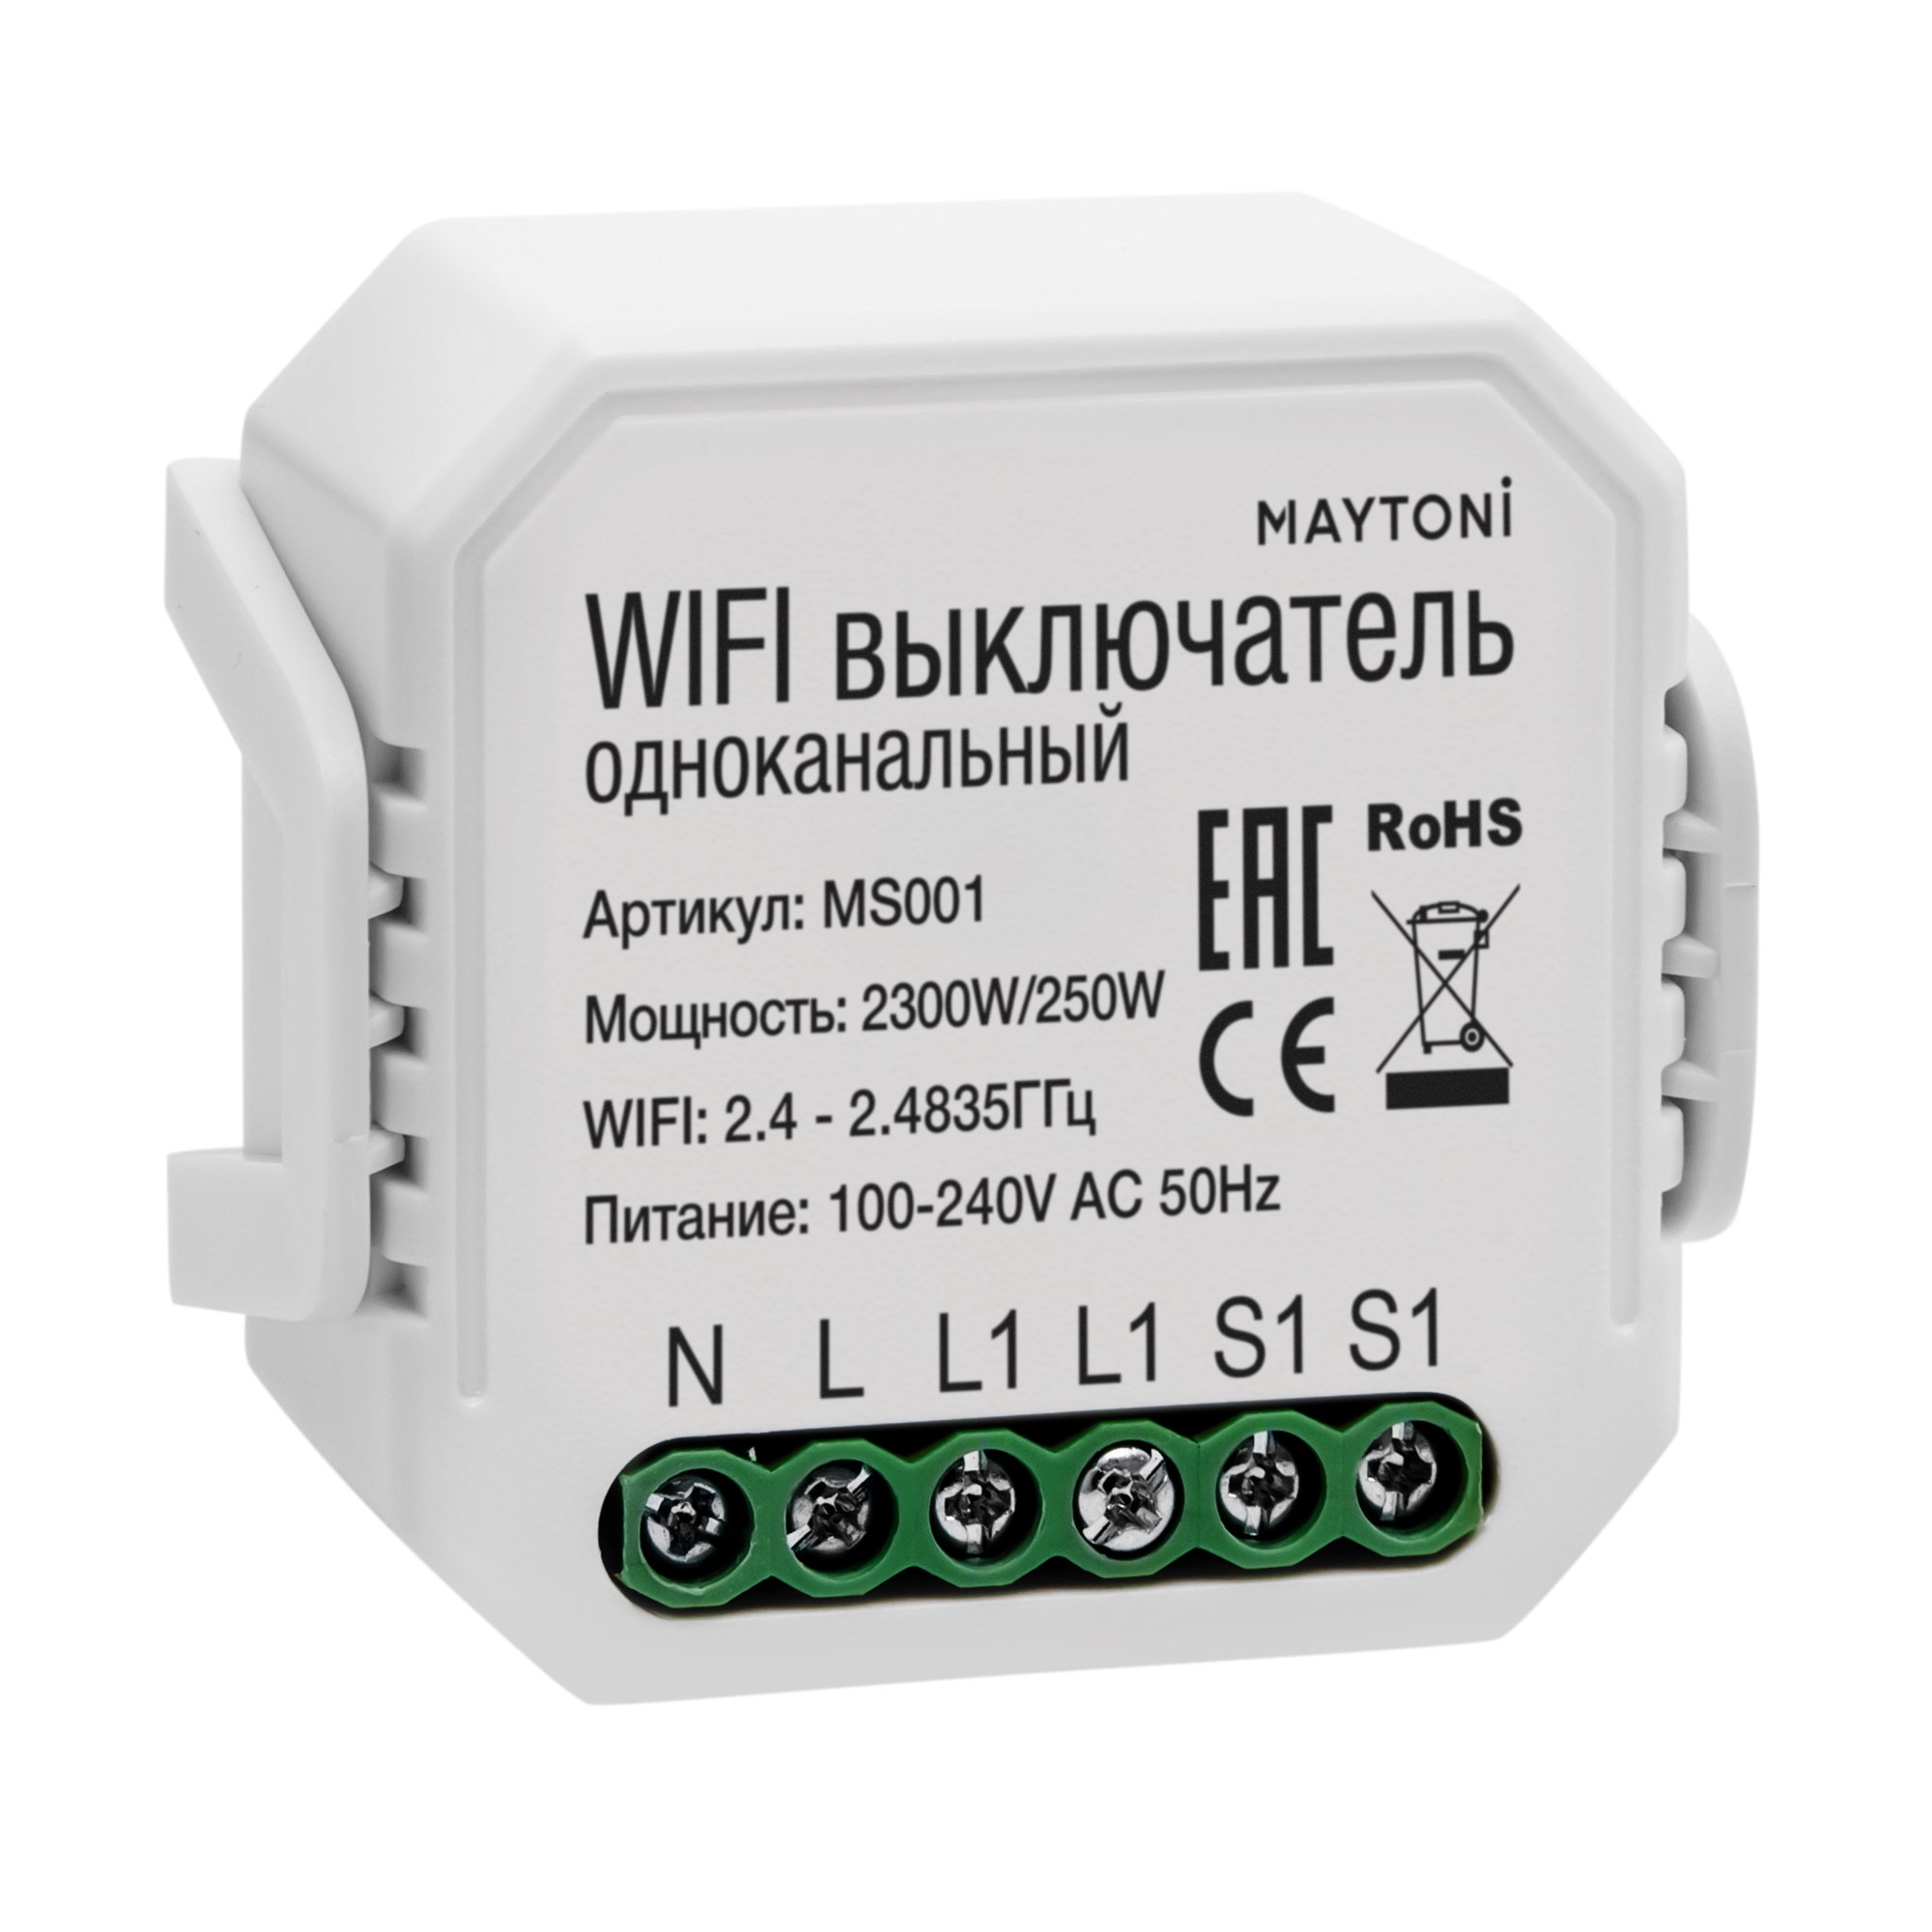 Wi-Fi выключатель одноканальный Wi-Fi 250W MS001